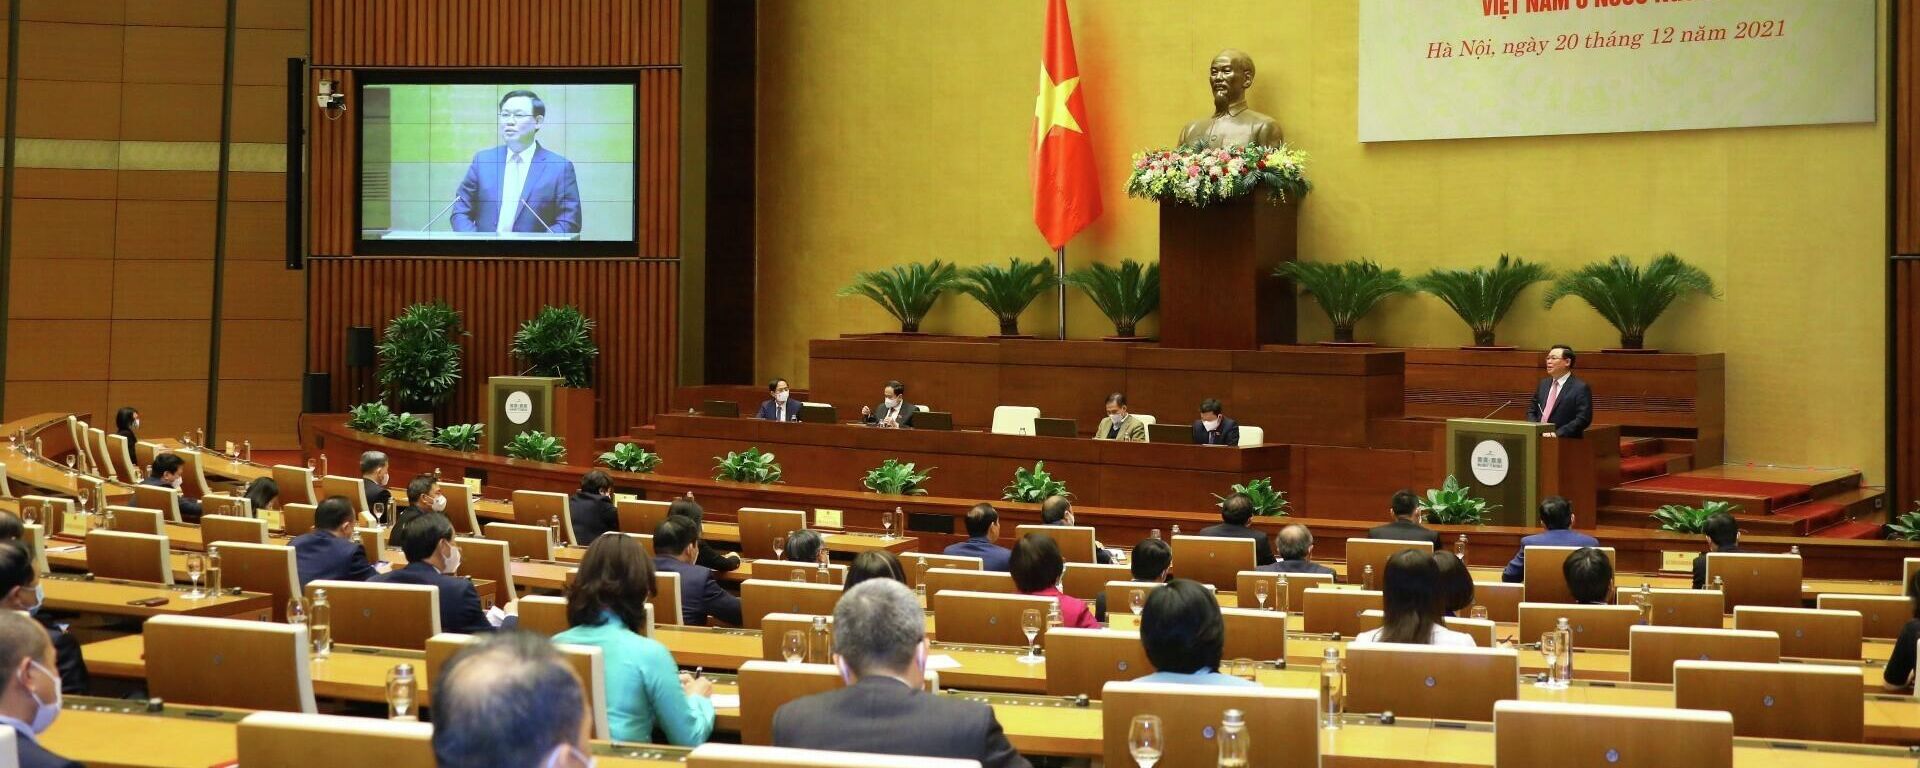 Chủ tịch Quốc hội Vương Đình Huệ phát biểu tại buổi gặp mặt - Sputnik Việt Nam, 1920, 28.12.2021